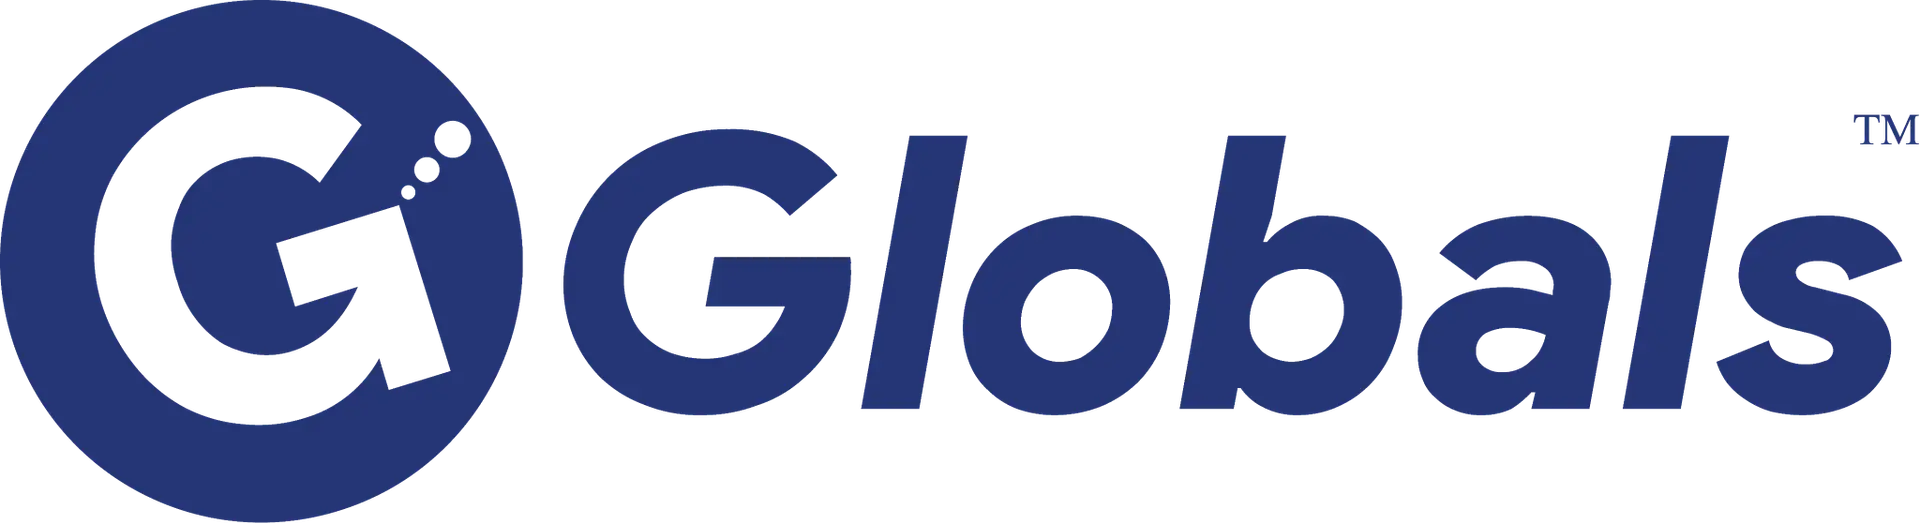 Globals Corporate Website